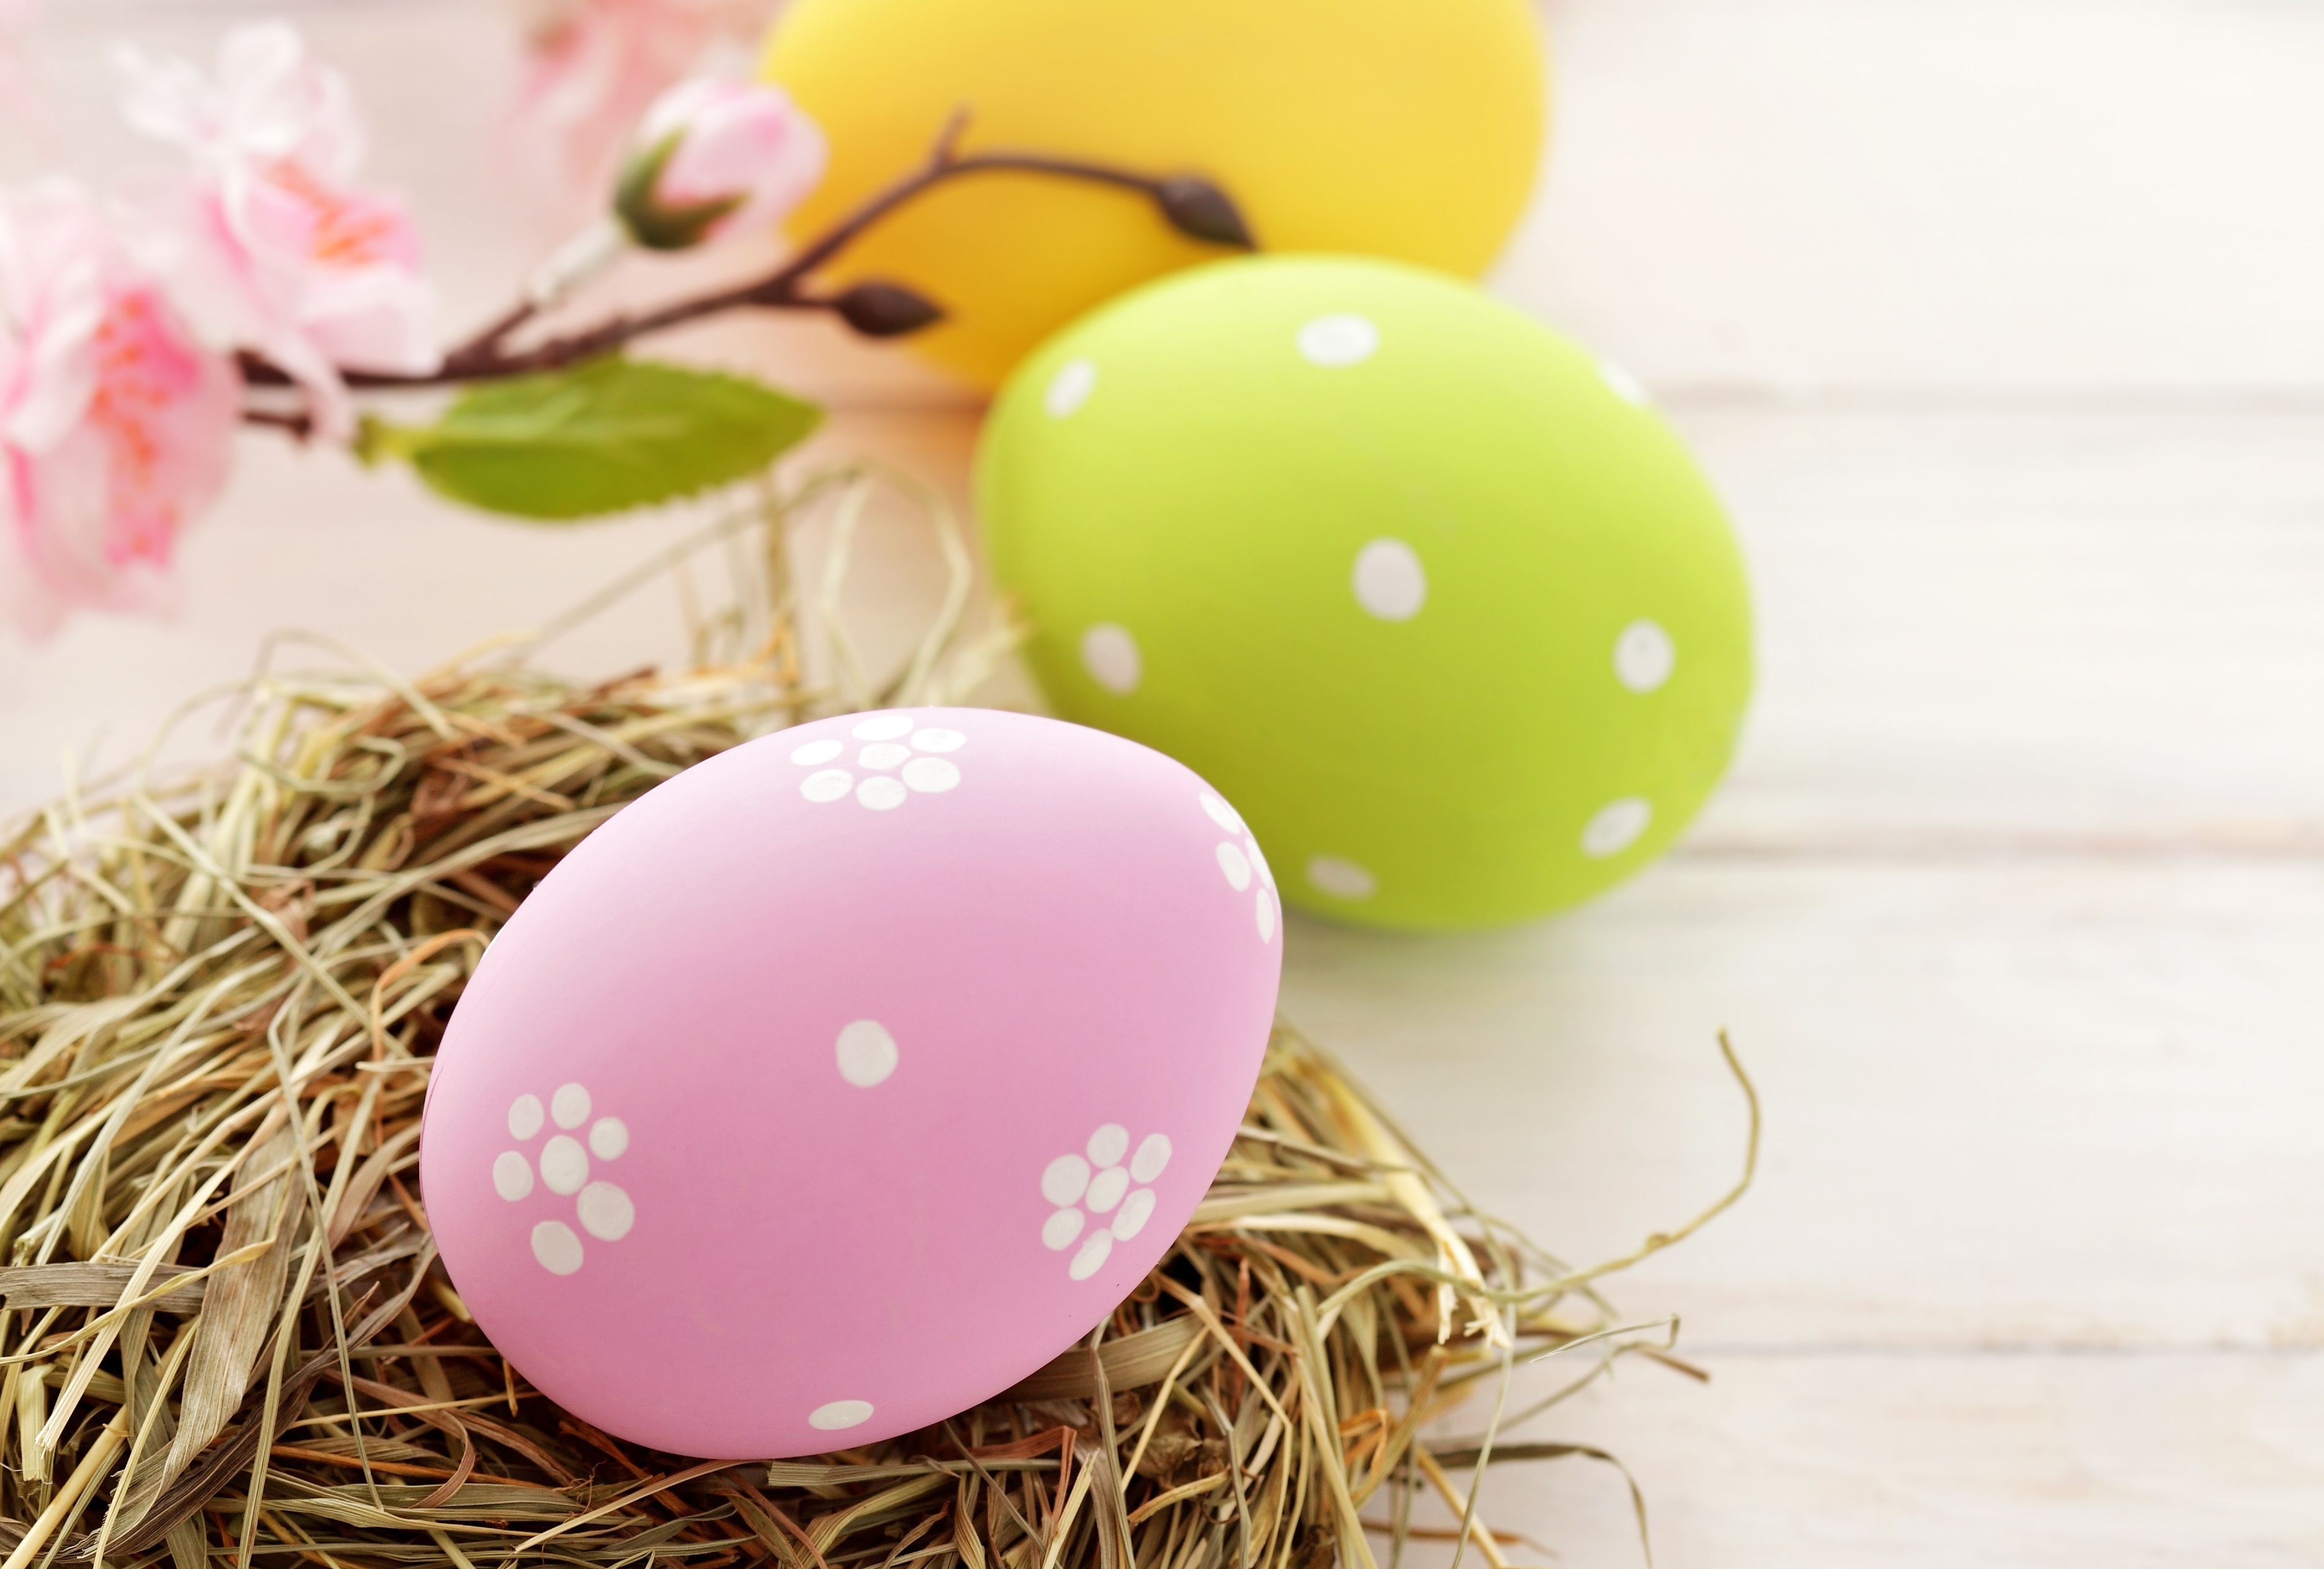 Пасха на пасху. Пасхальное яйцо. Пасхальные картины. Пасхальное яйцо (праздник Пасхи). Розовые пасхальные яйца.